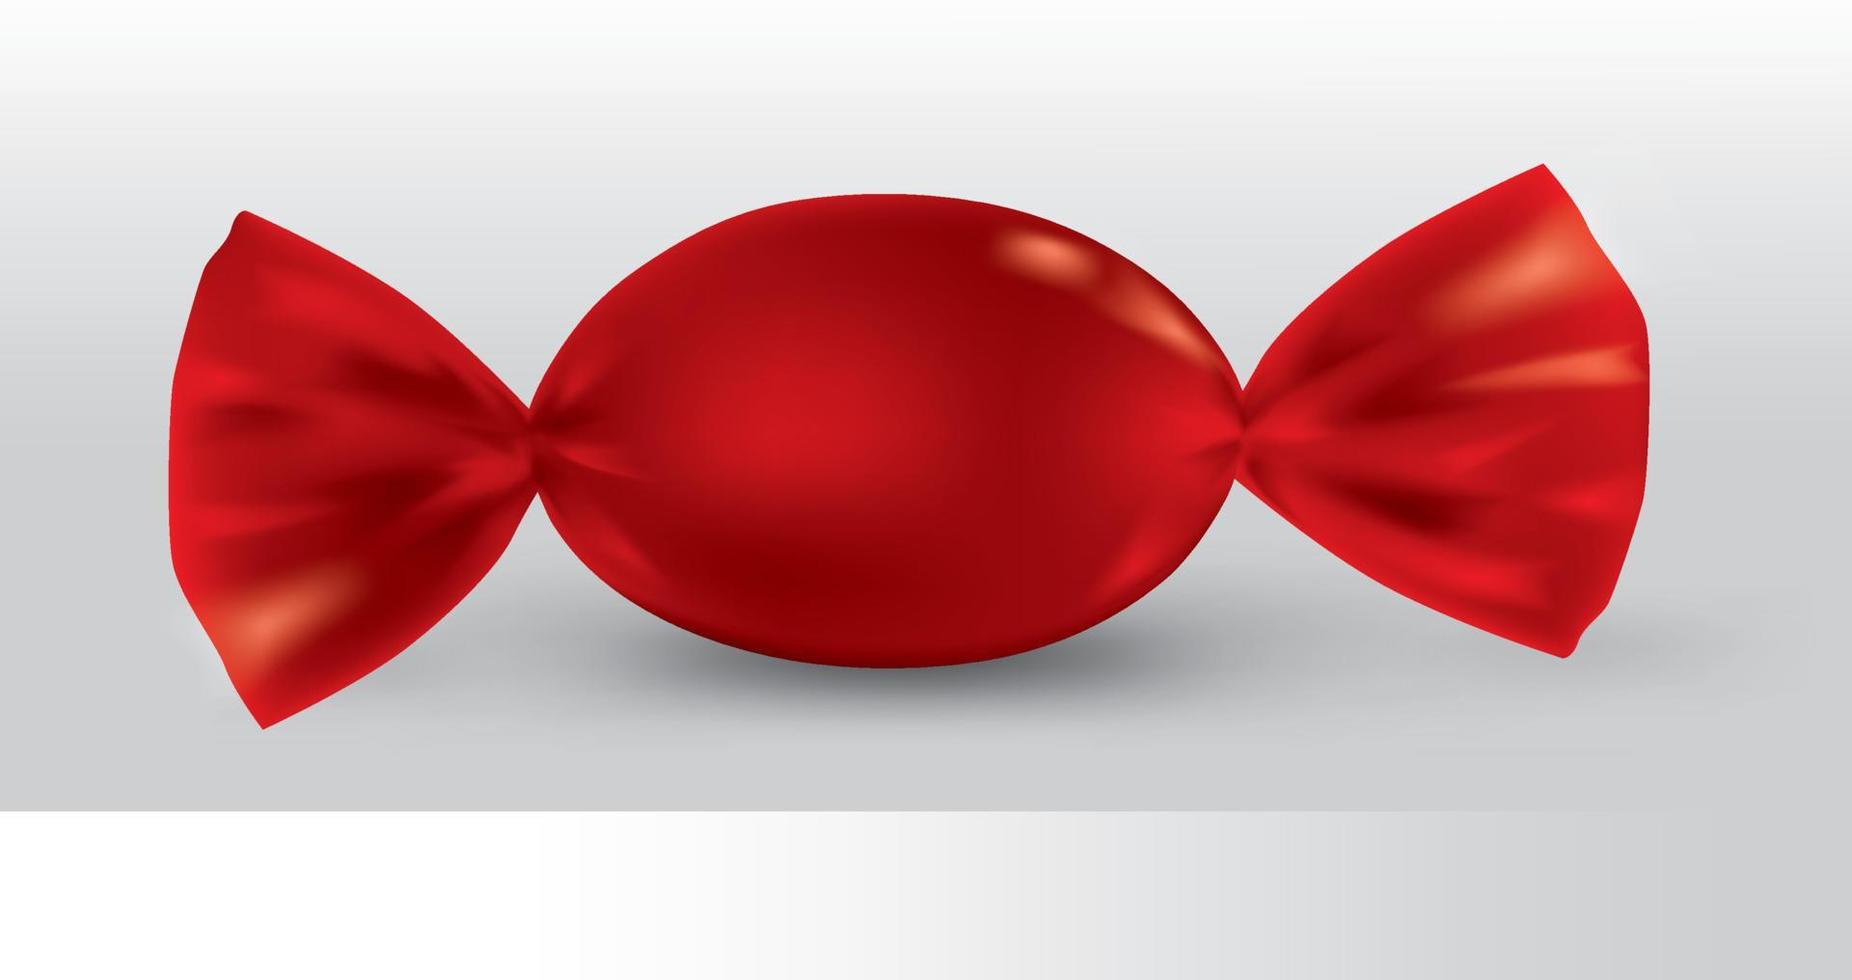 rotes ovales Bonbonpaket für neues Design, Isolierung des Produkts auf weißem Hintergrund mit Reflexionen und rote Lötfarbe. vektor